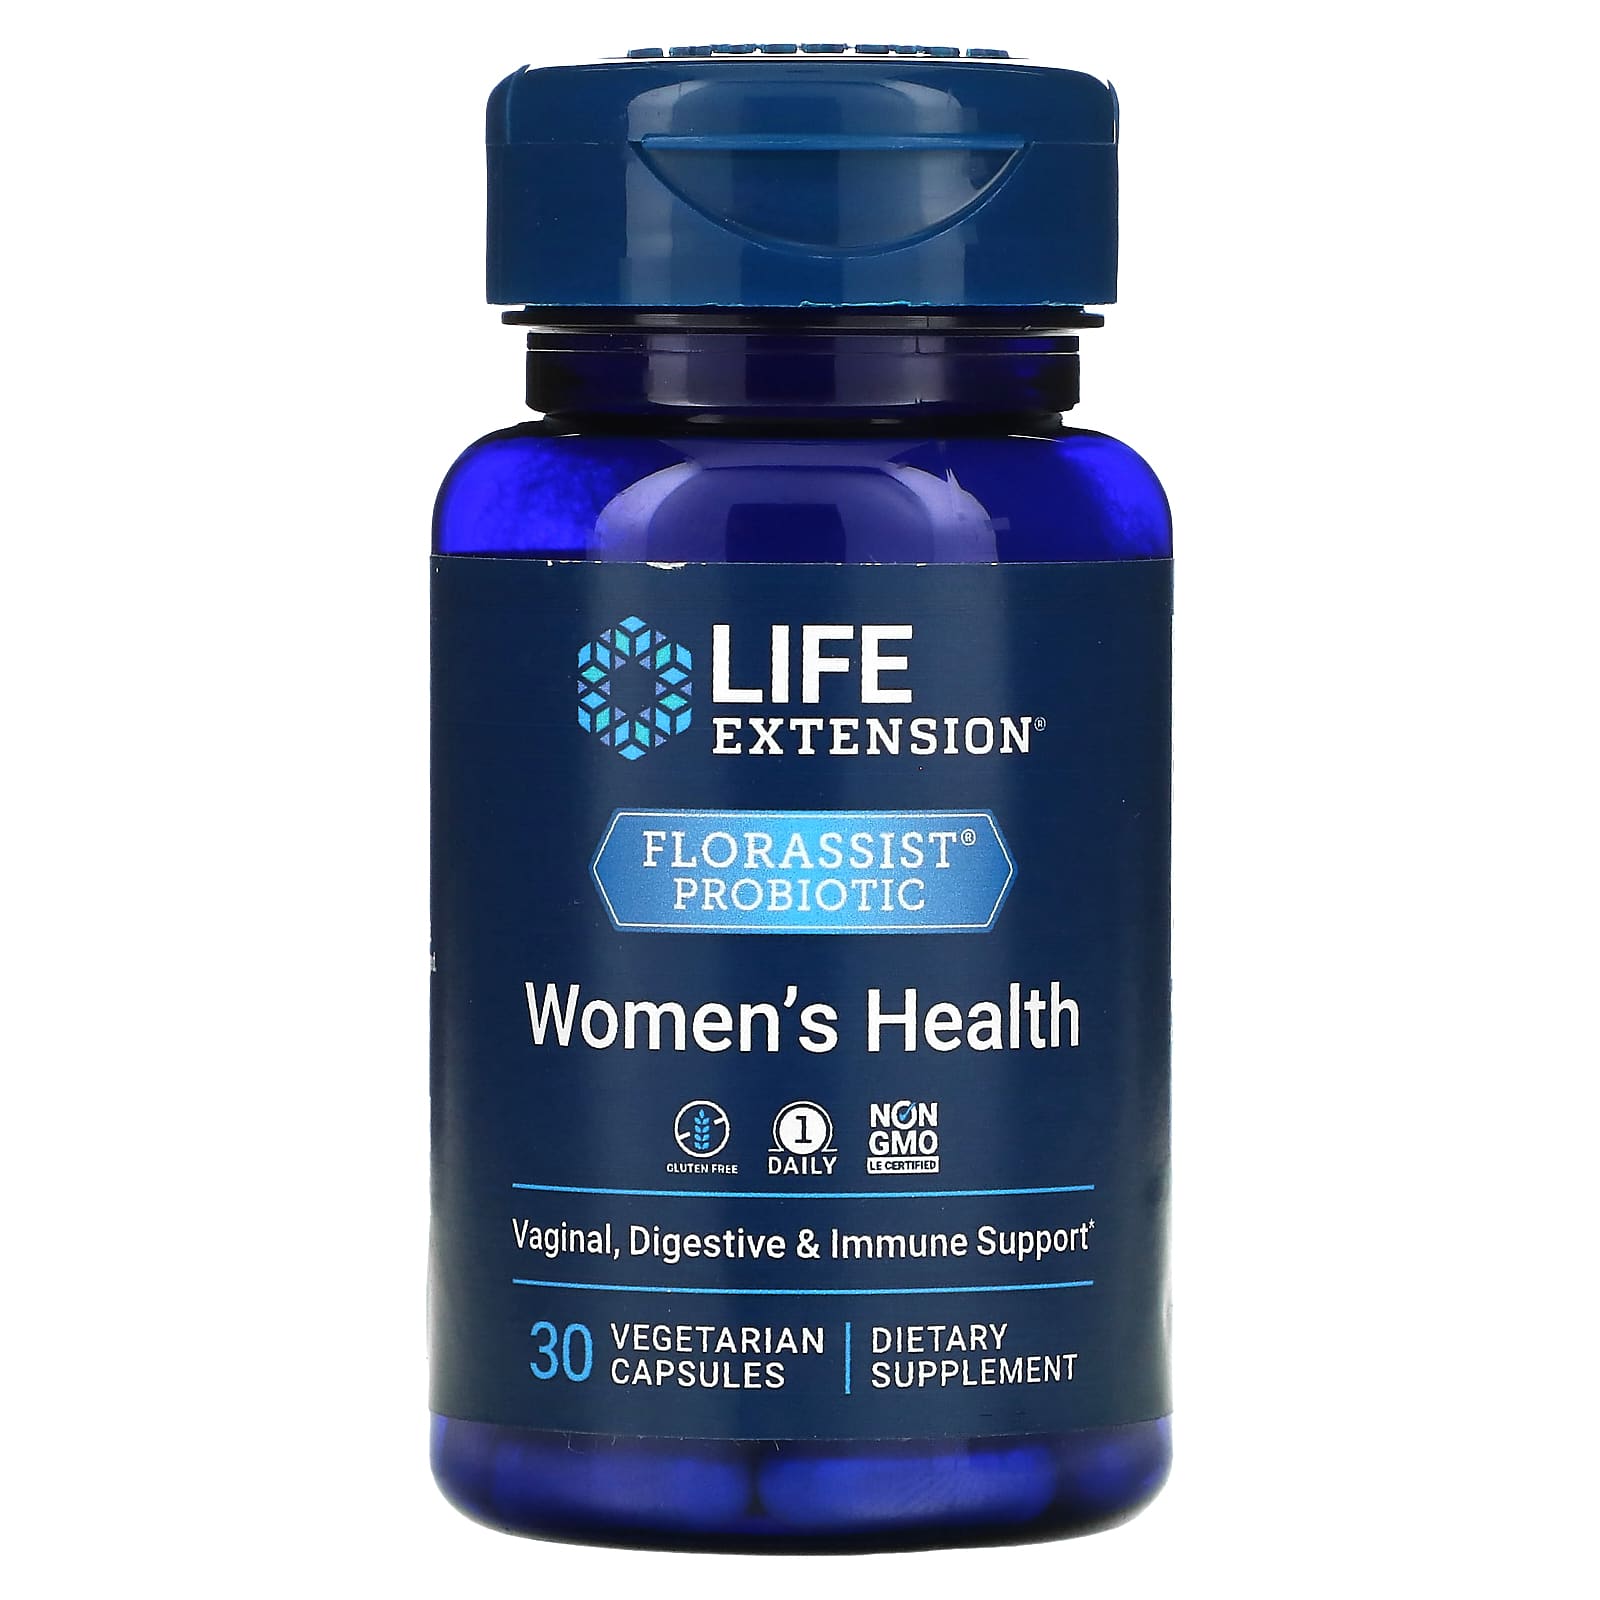 Пробиотик Life Extension для здоровья женщин, 30 вегетарианских капсул пробиотик eu natural momma 30 вегетарианских капсул